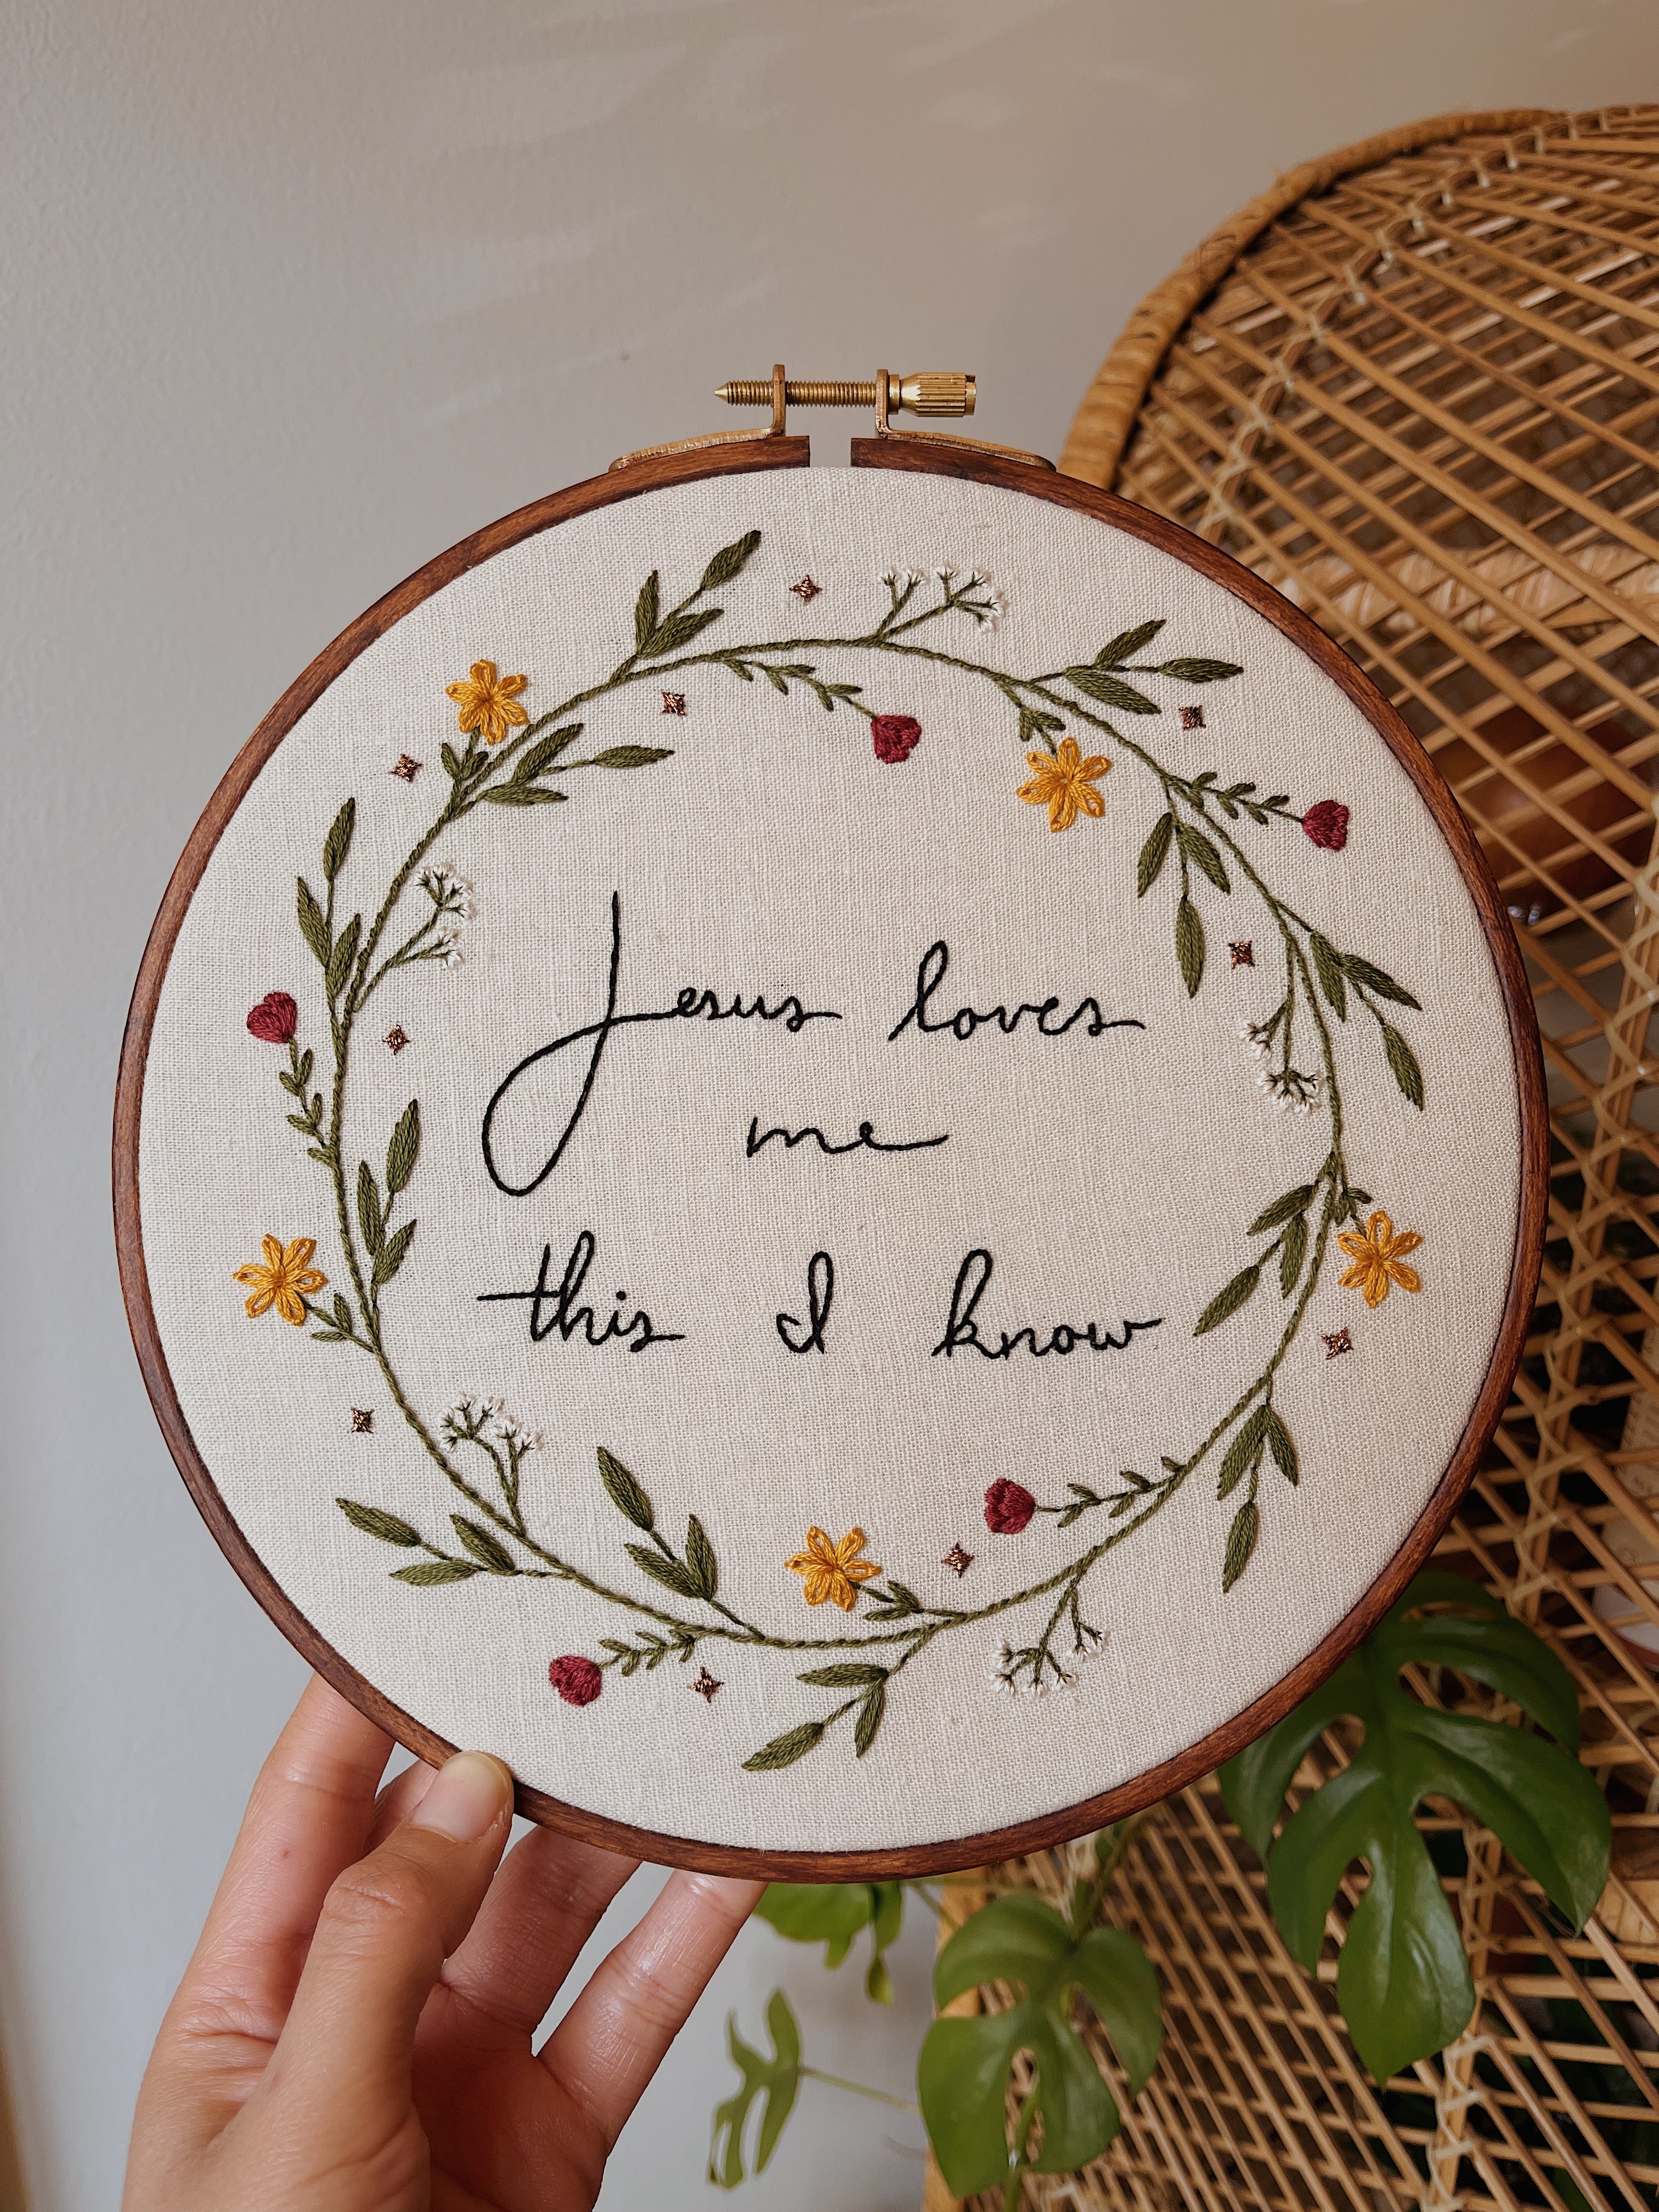 Jesus Loves Me embroidery hoop – MustardThread